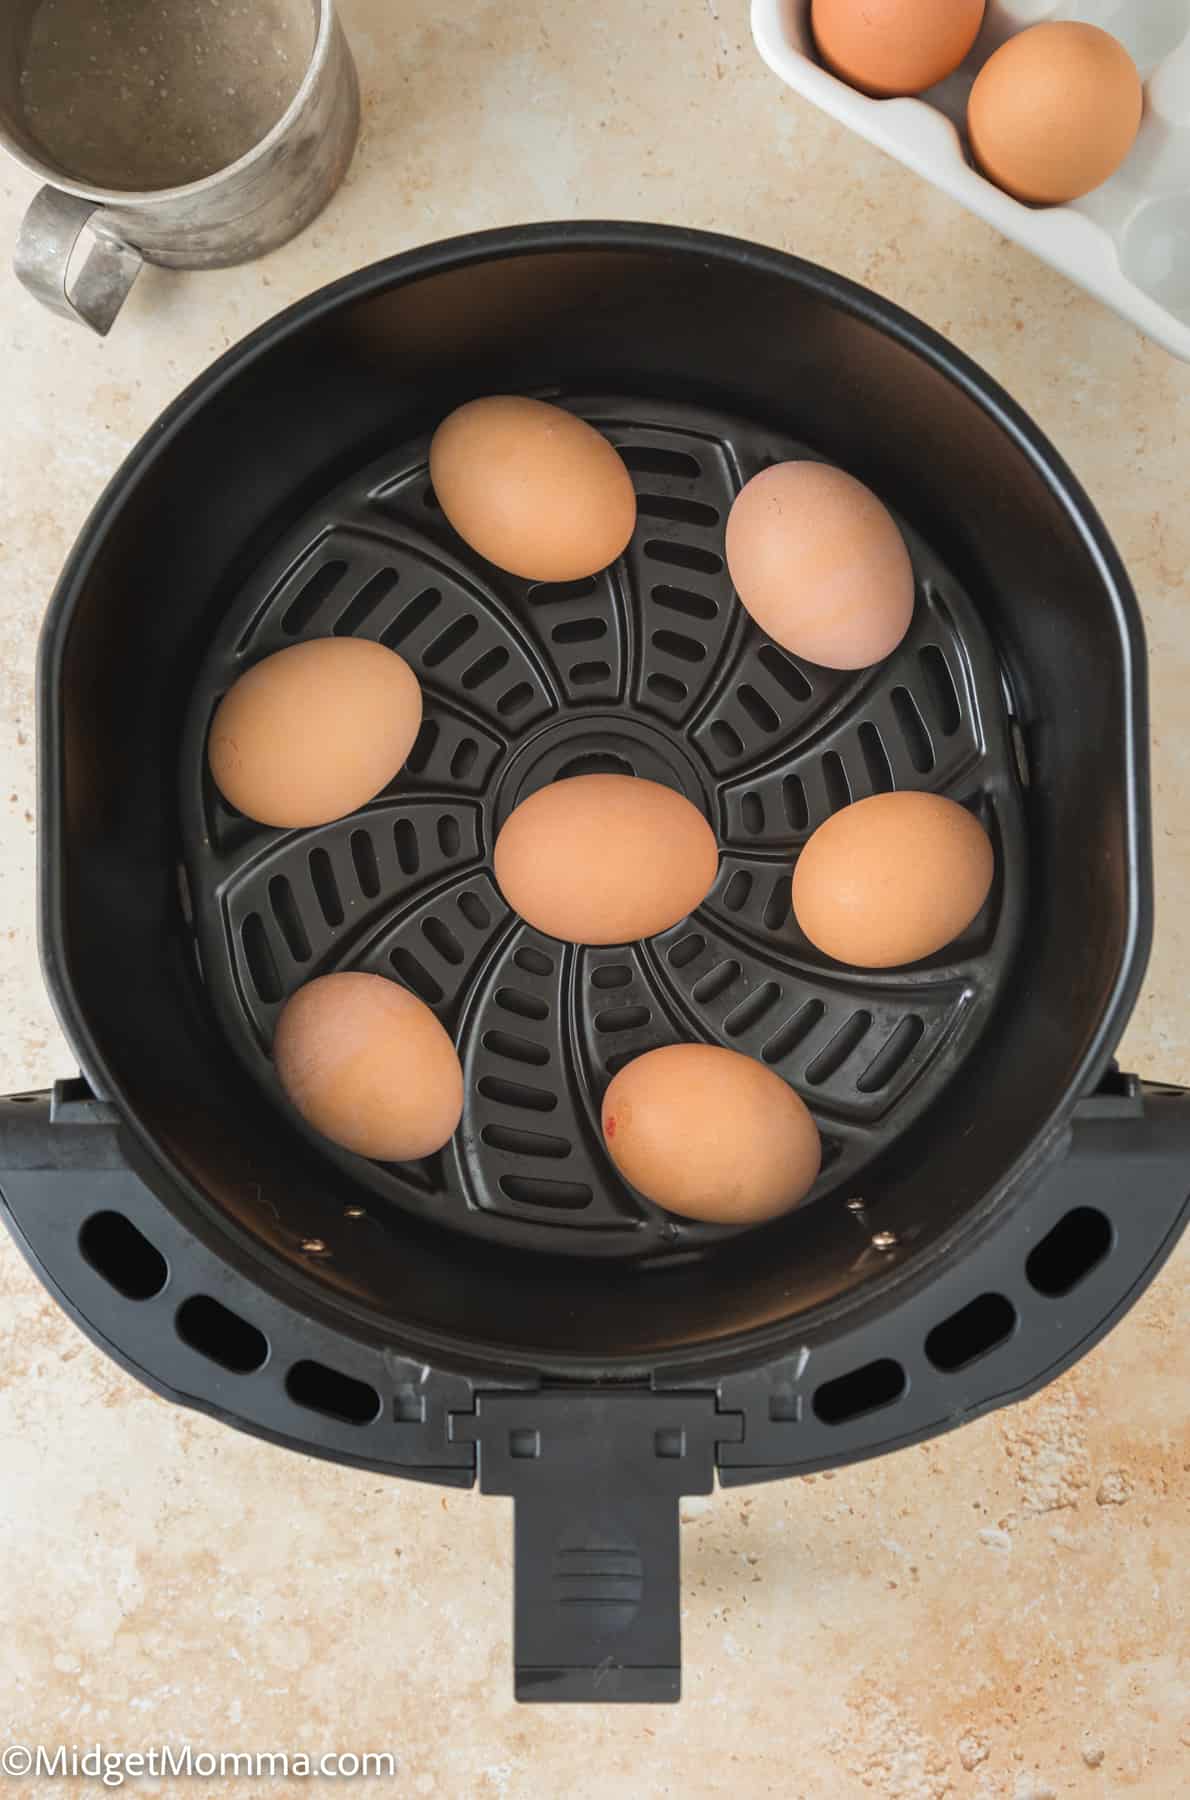 raw eggs in air fryer basket